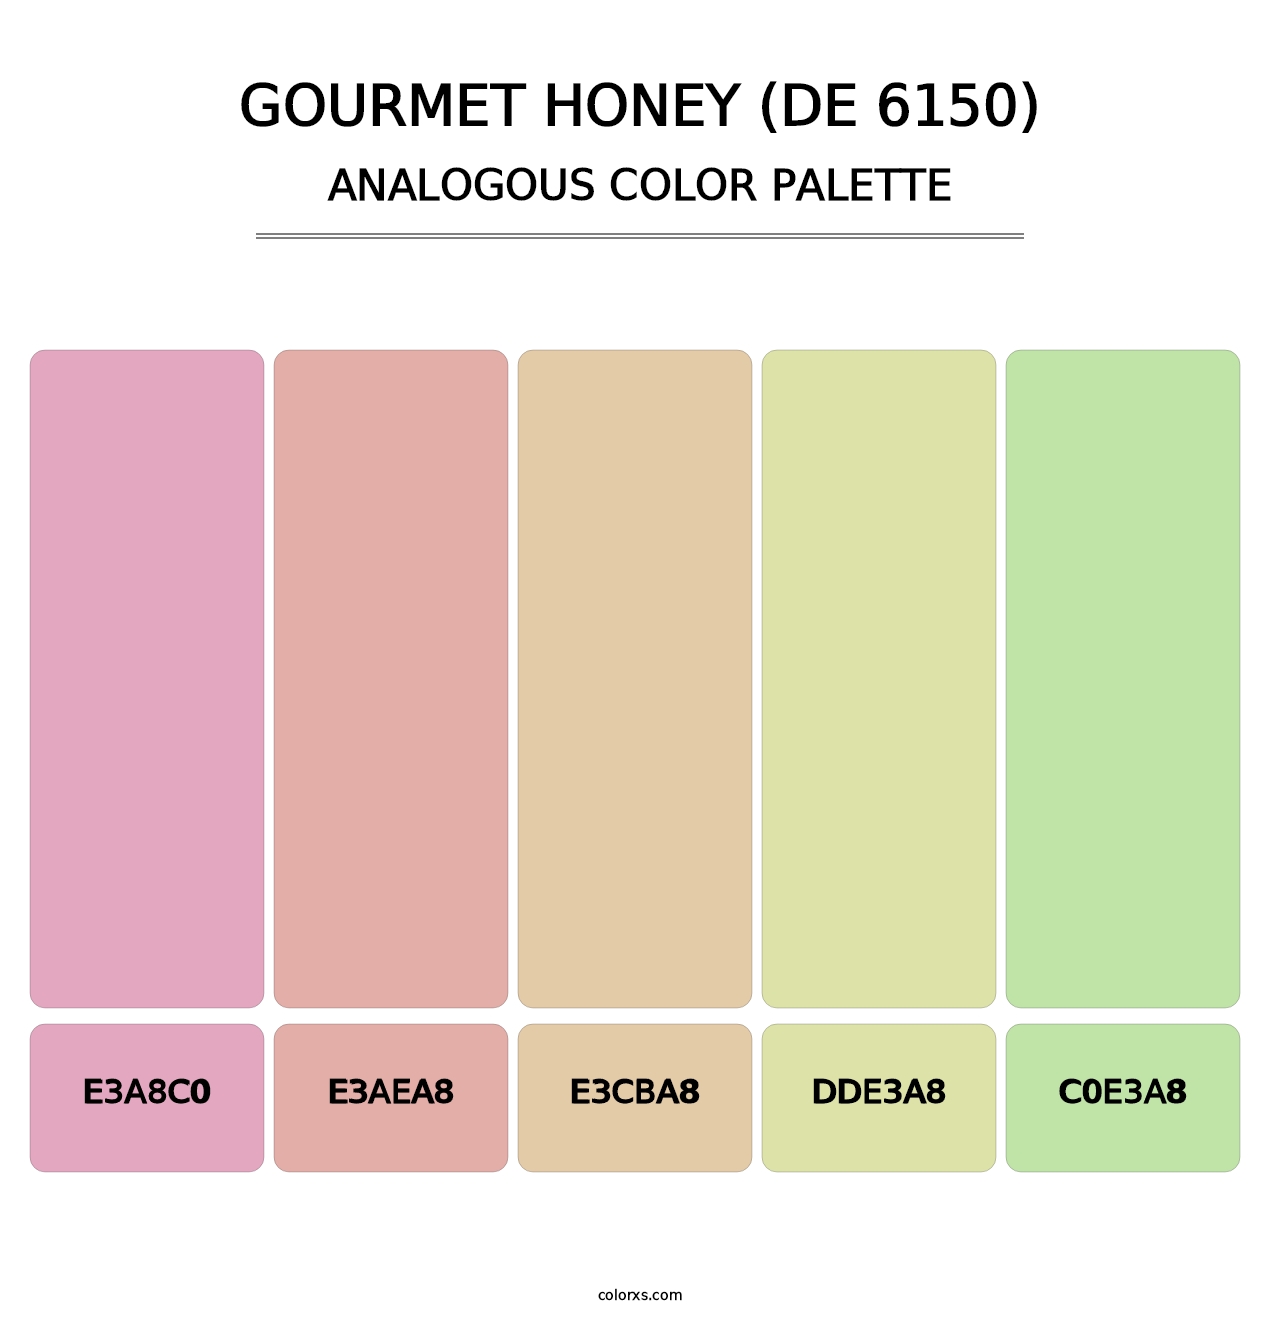 Gourmet Honey (DE 6150) - Analogous Color Palette